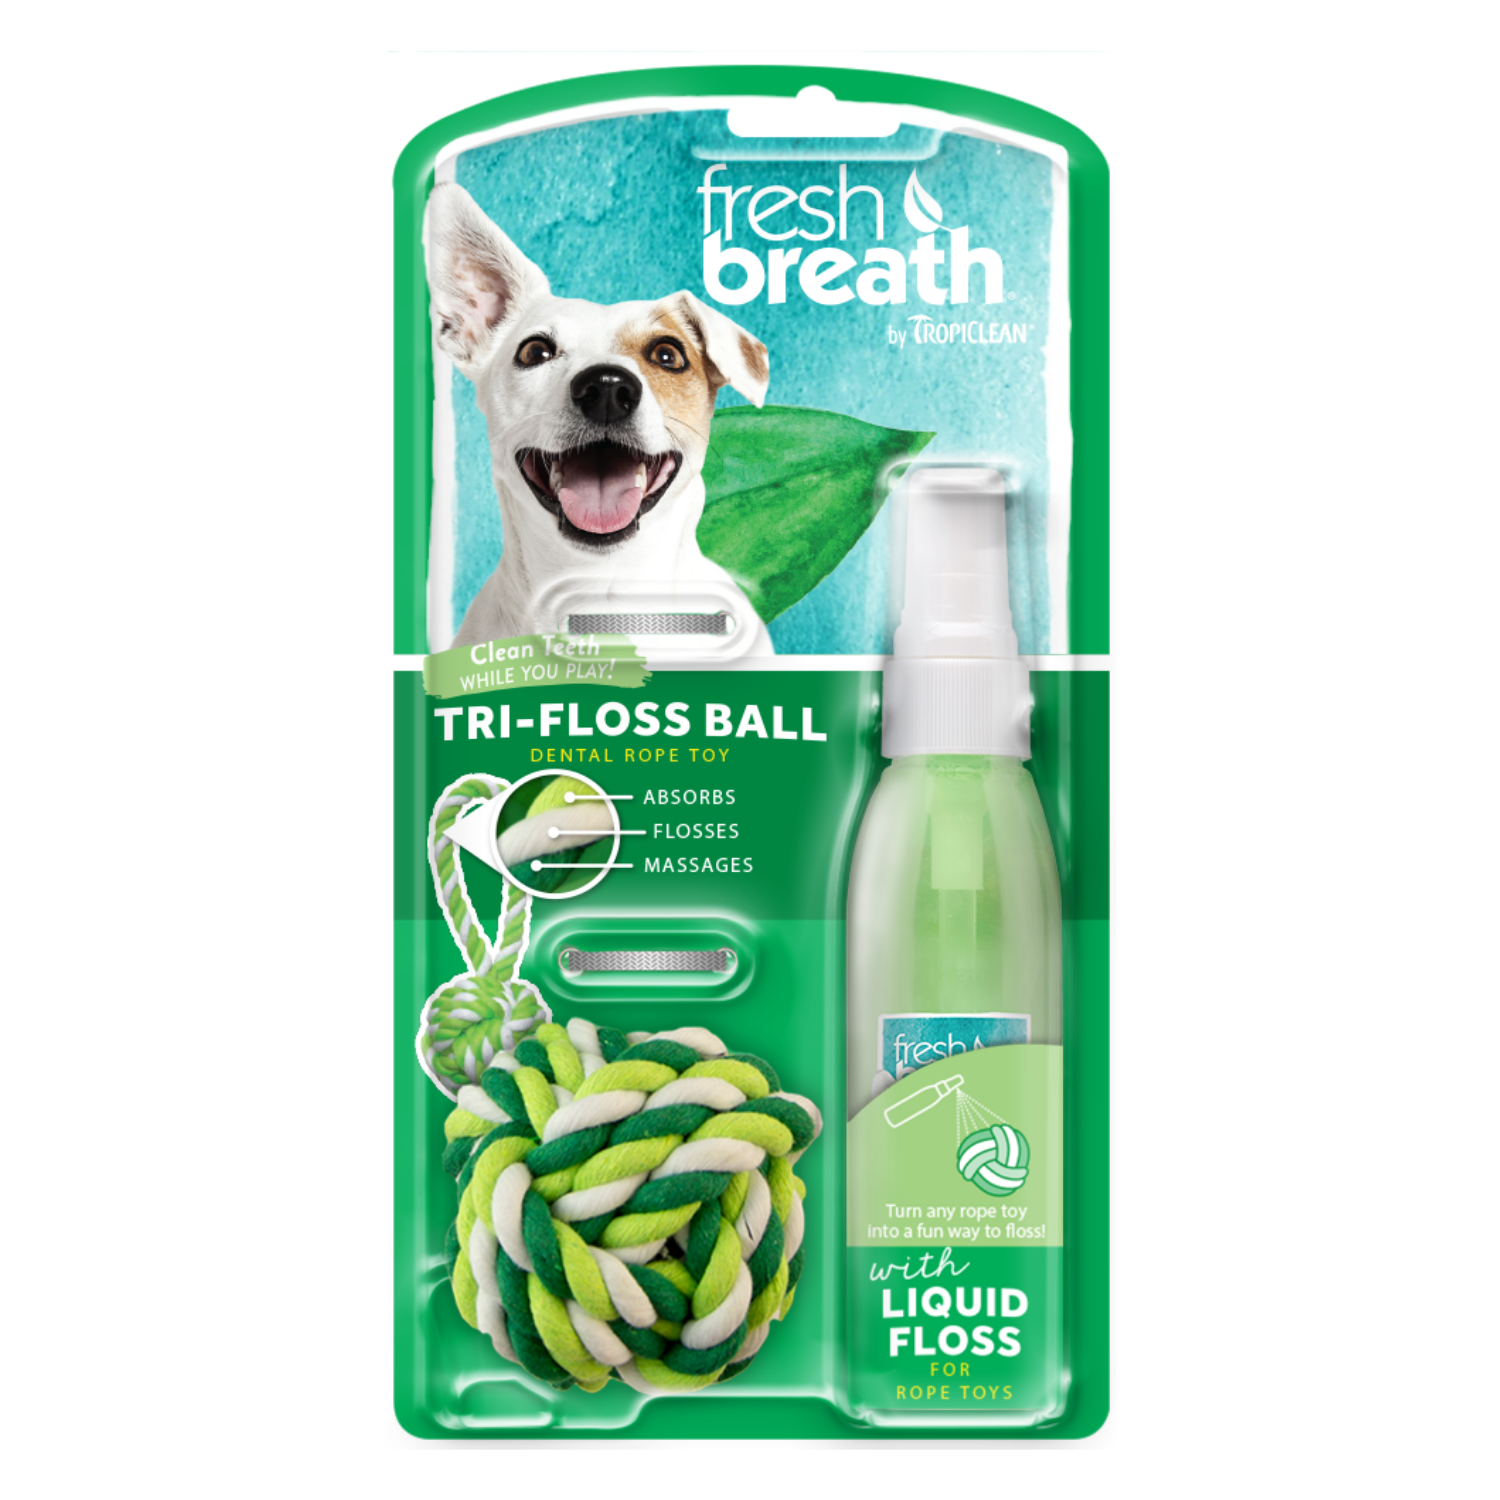 [DISCONTINUED] Tropiclean Fresh Breath Liquid Floss + Tri-Floss Ball - 118ml